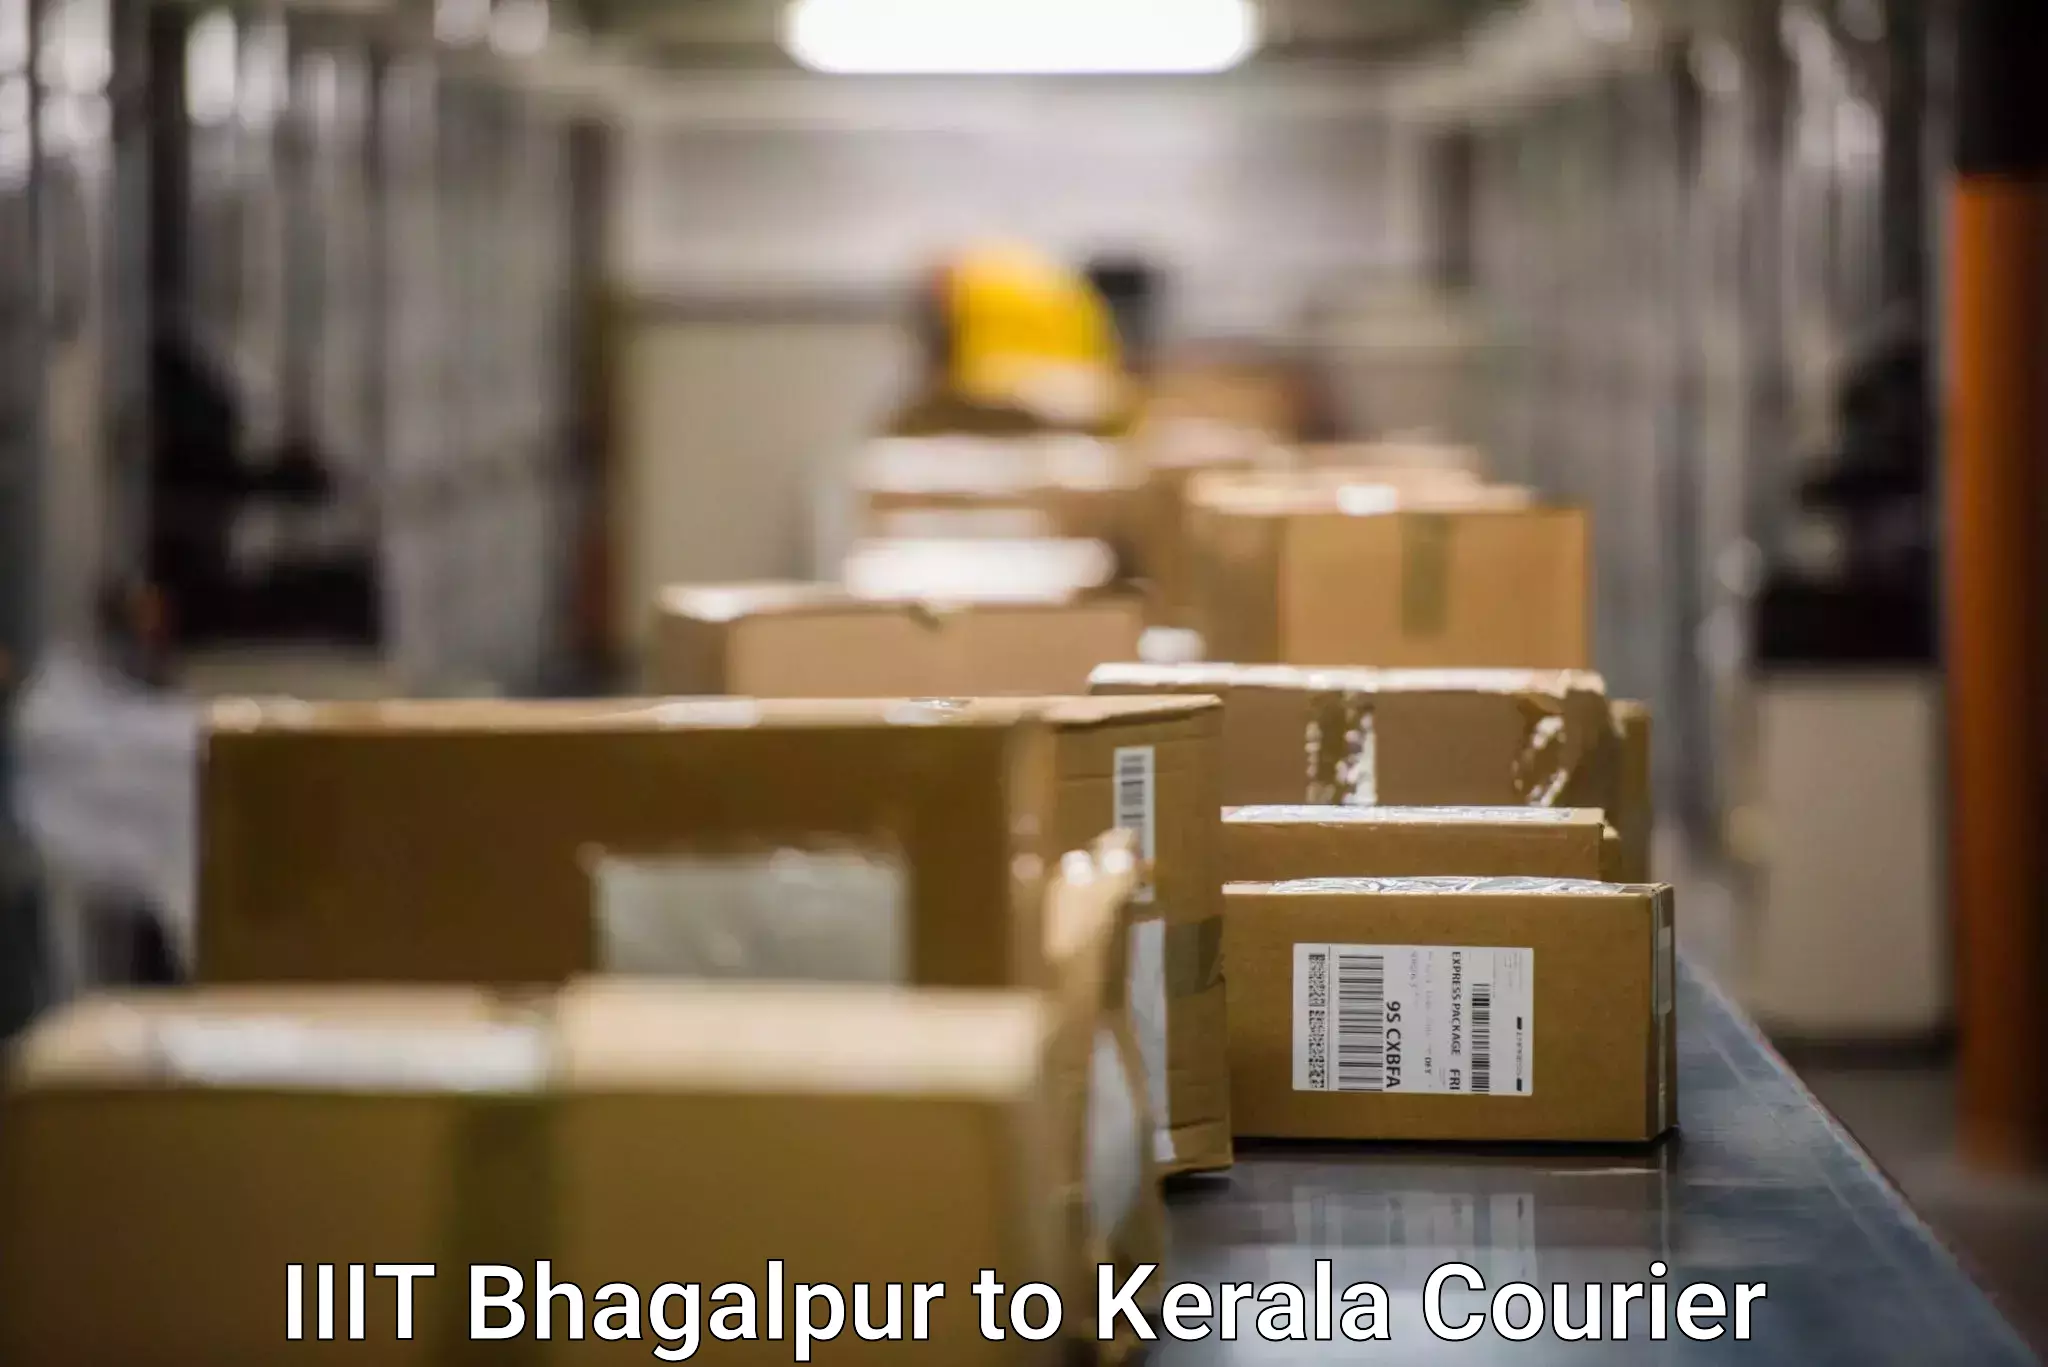 Seamless shipping experience IIIT Bhagalpur to Kakkur